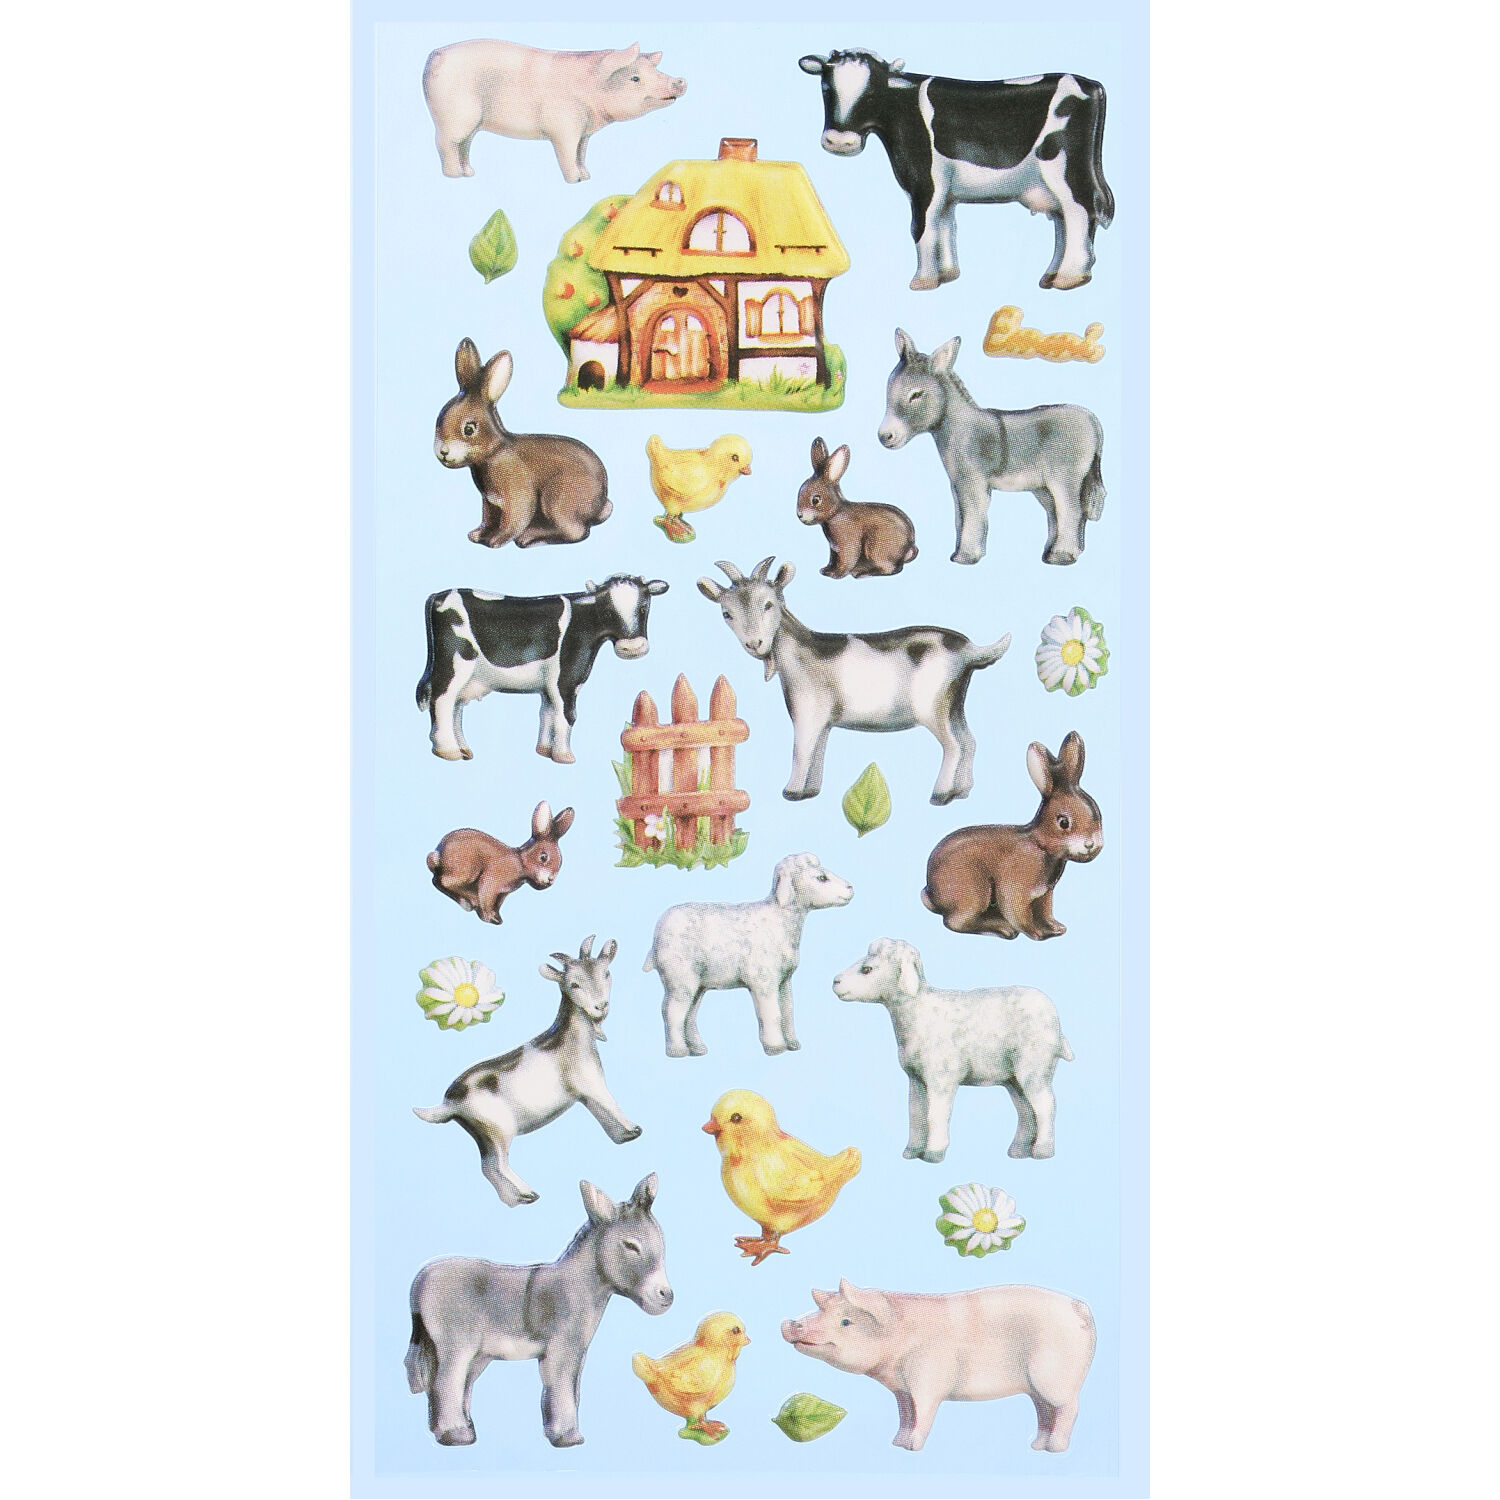 NEU SOFTY 3-D Sticker / Aufkleber, Bauernhof Tiere, 1 Bogen